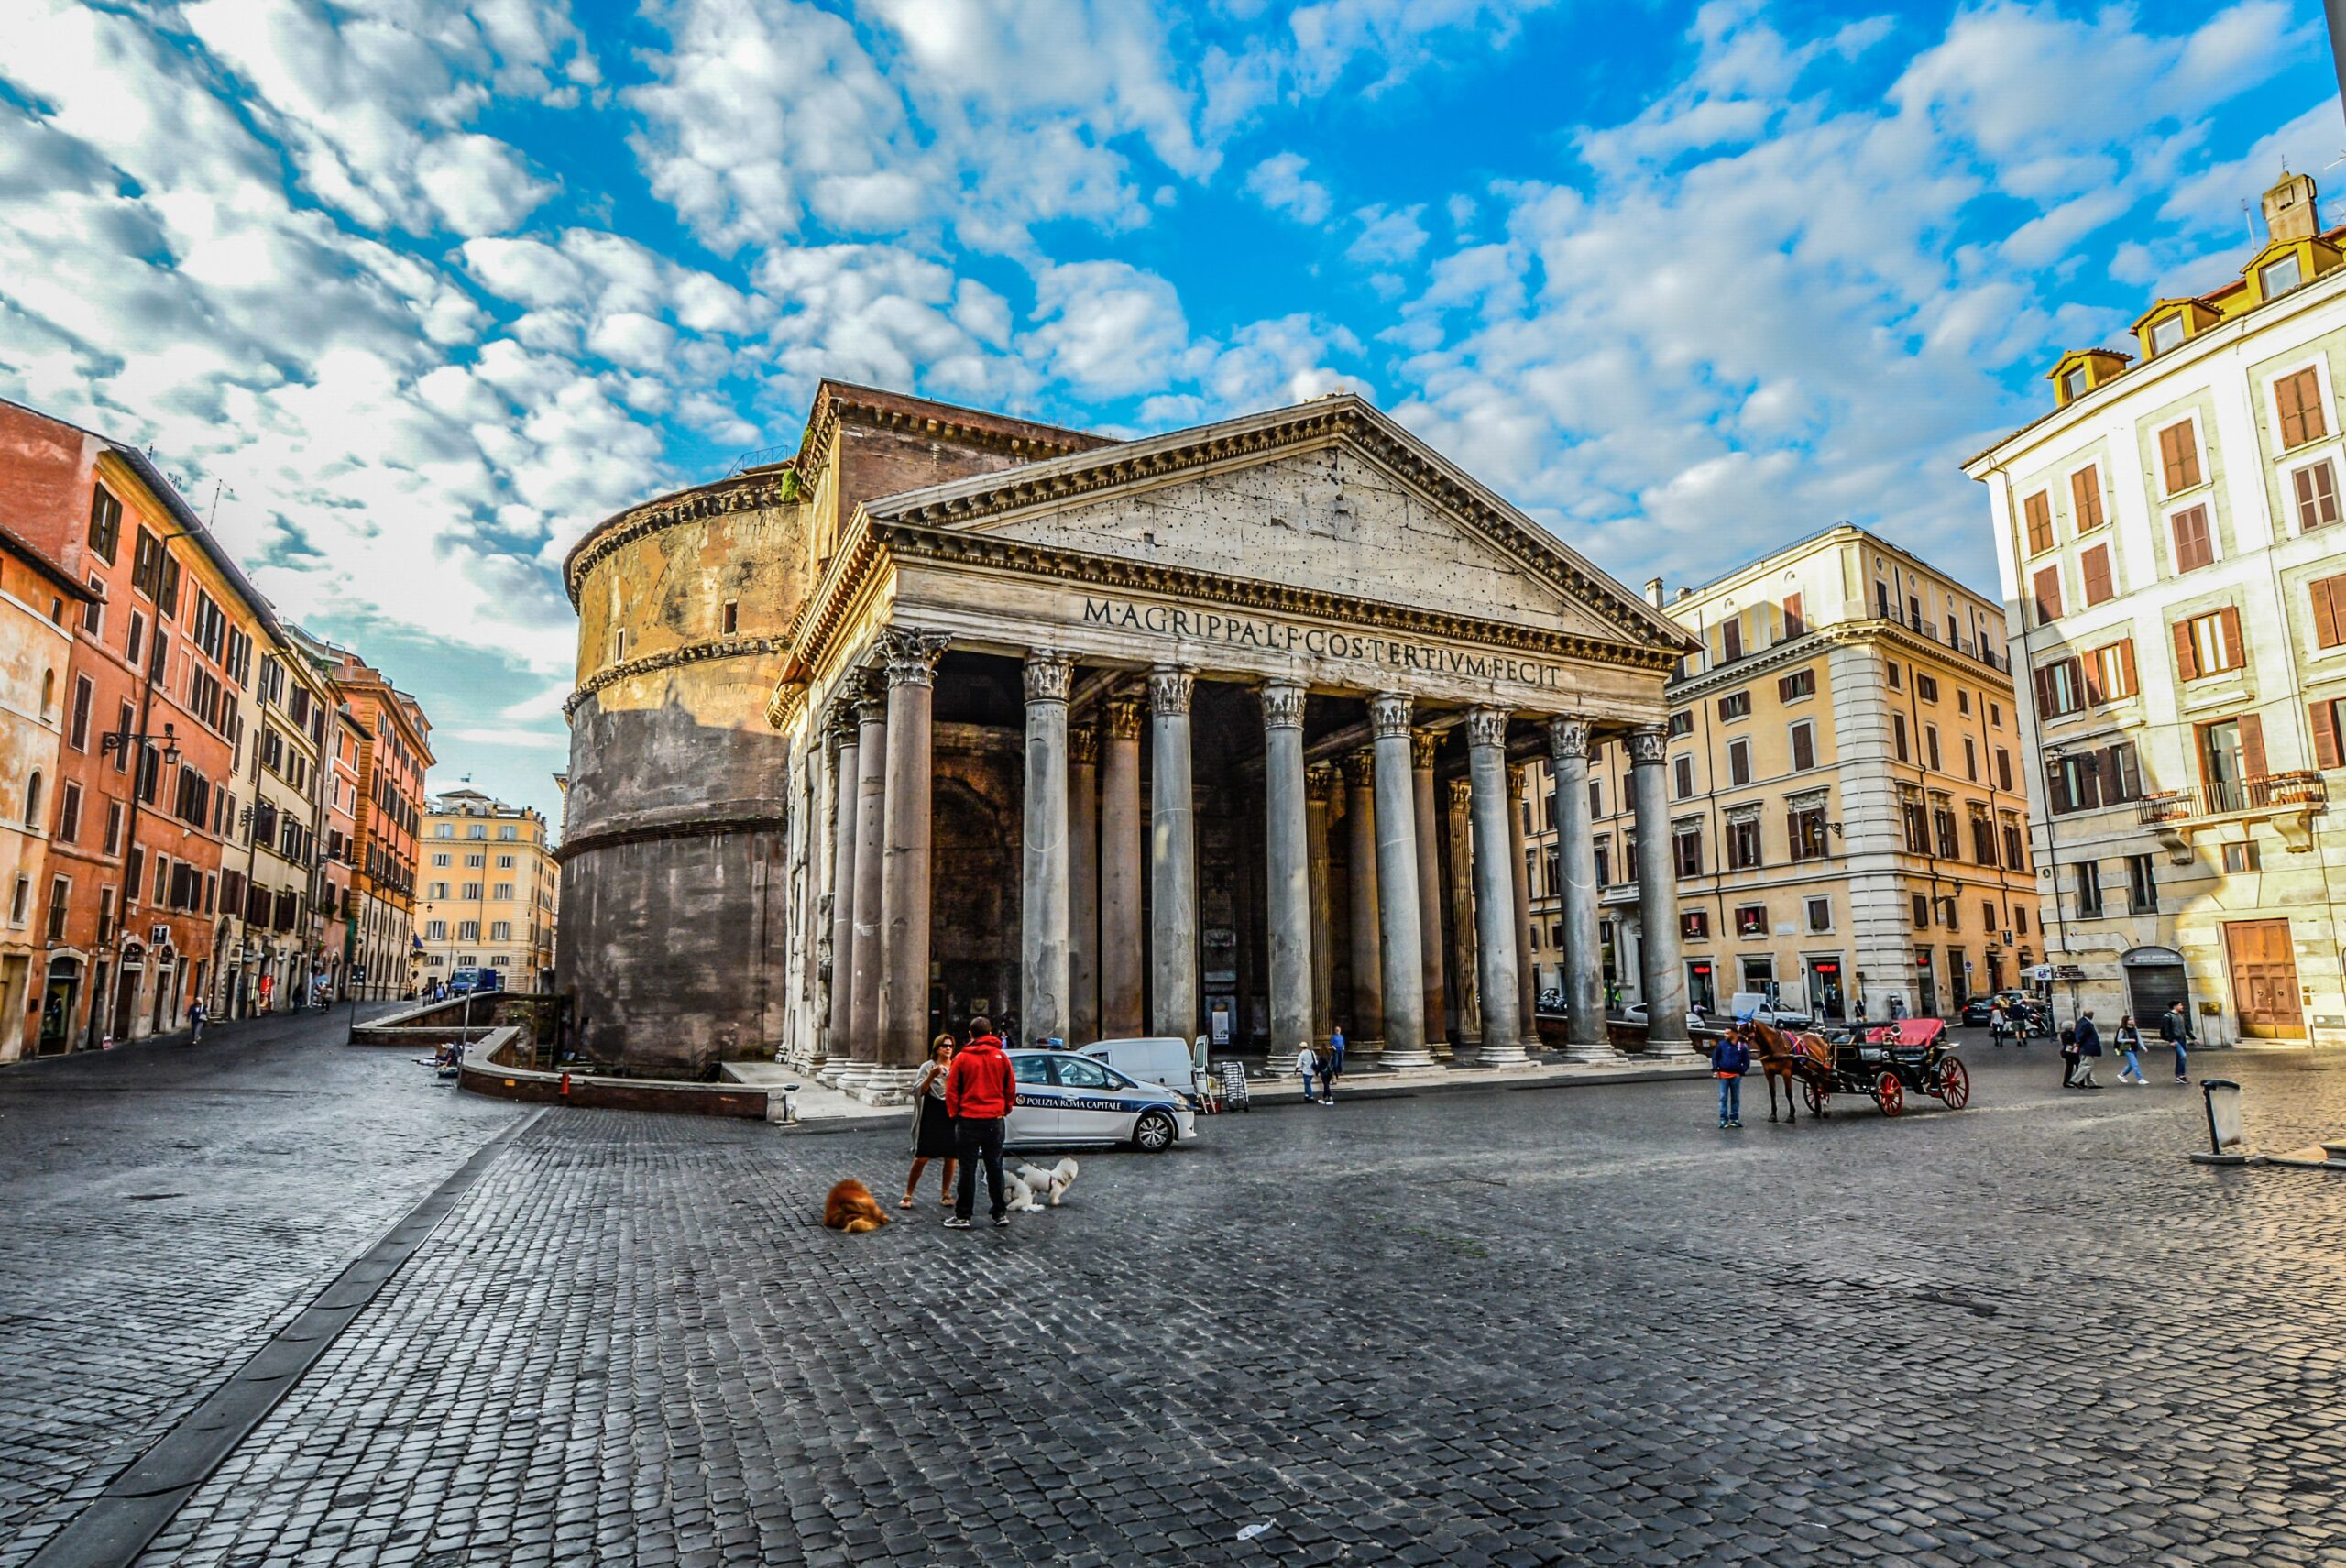 pantheon roman travertine